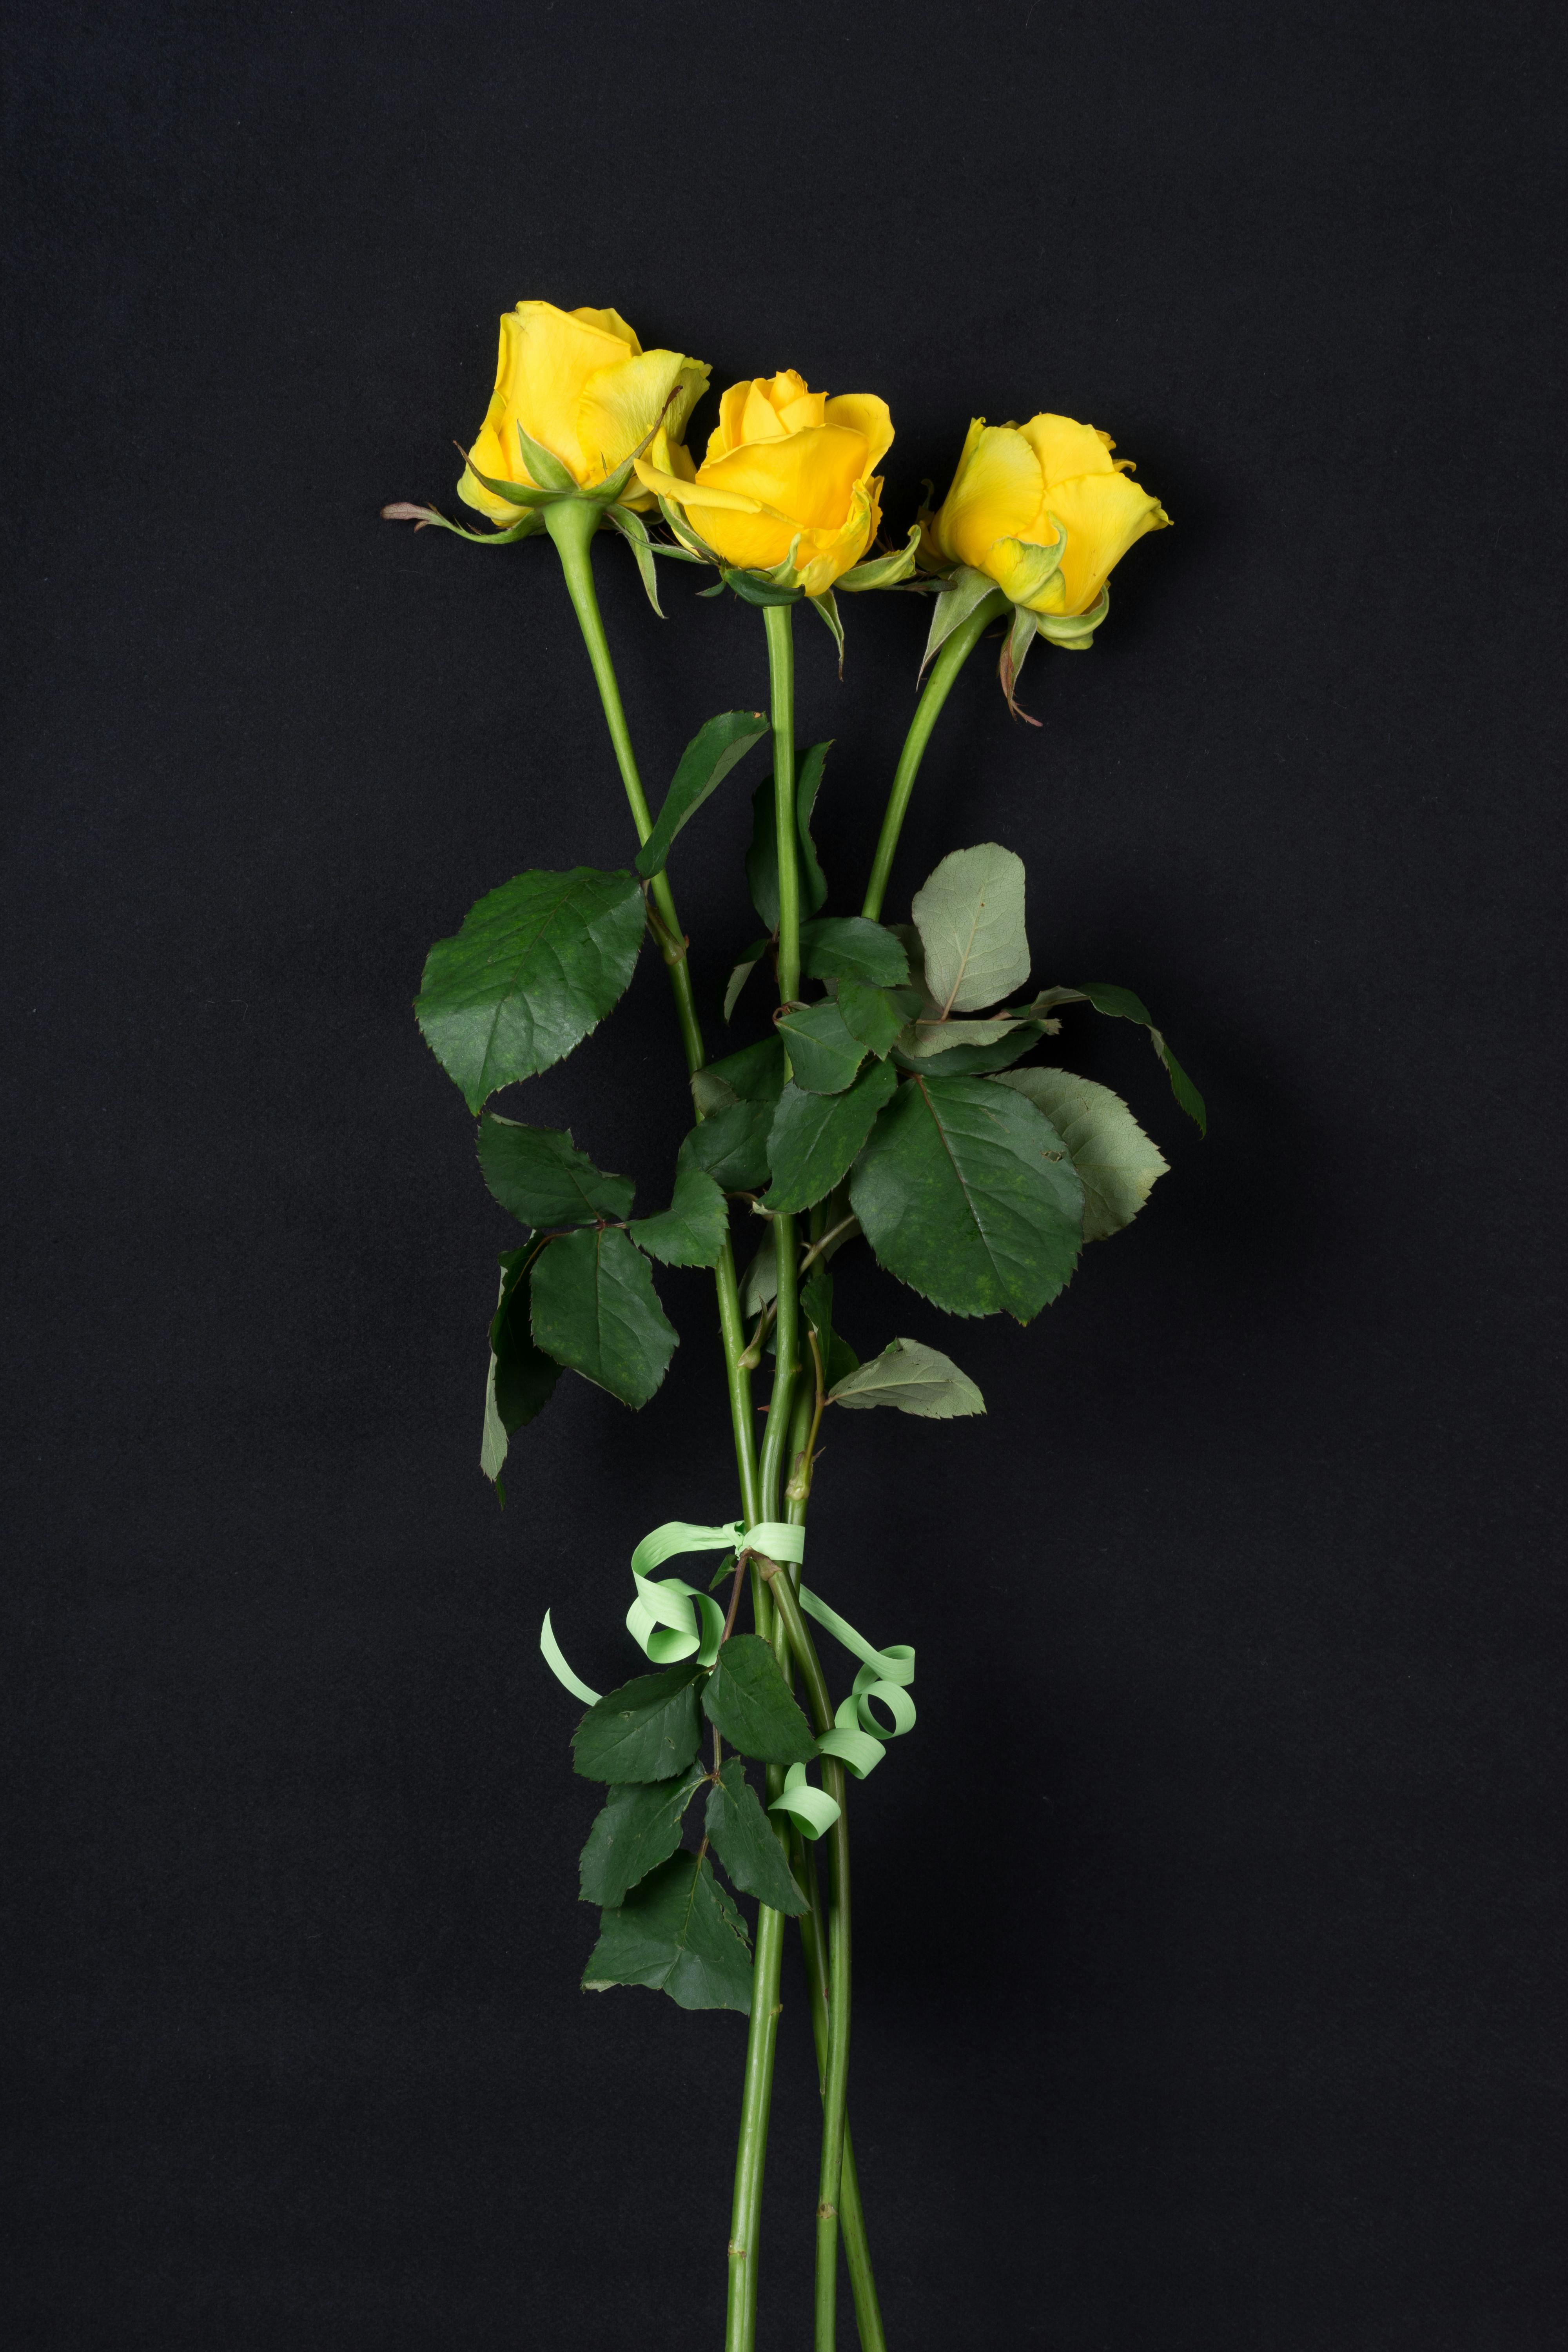 63.053+ Fotos y Imágenes de Rosas amarillas Gratis · Banco de Fotos Gratis